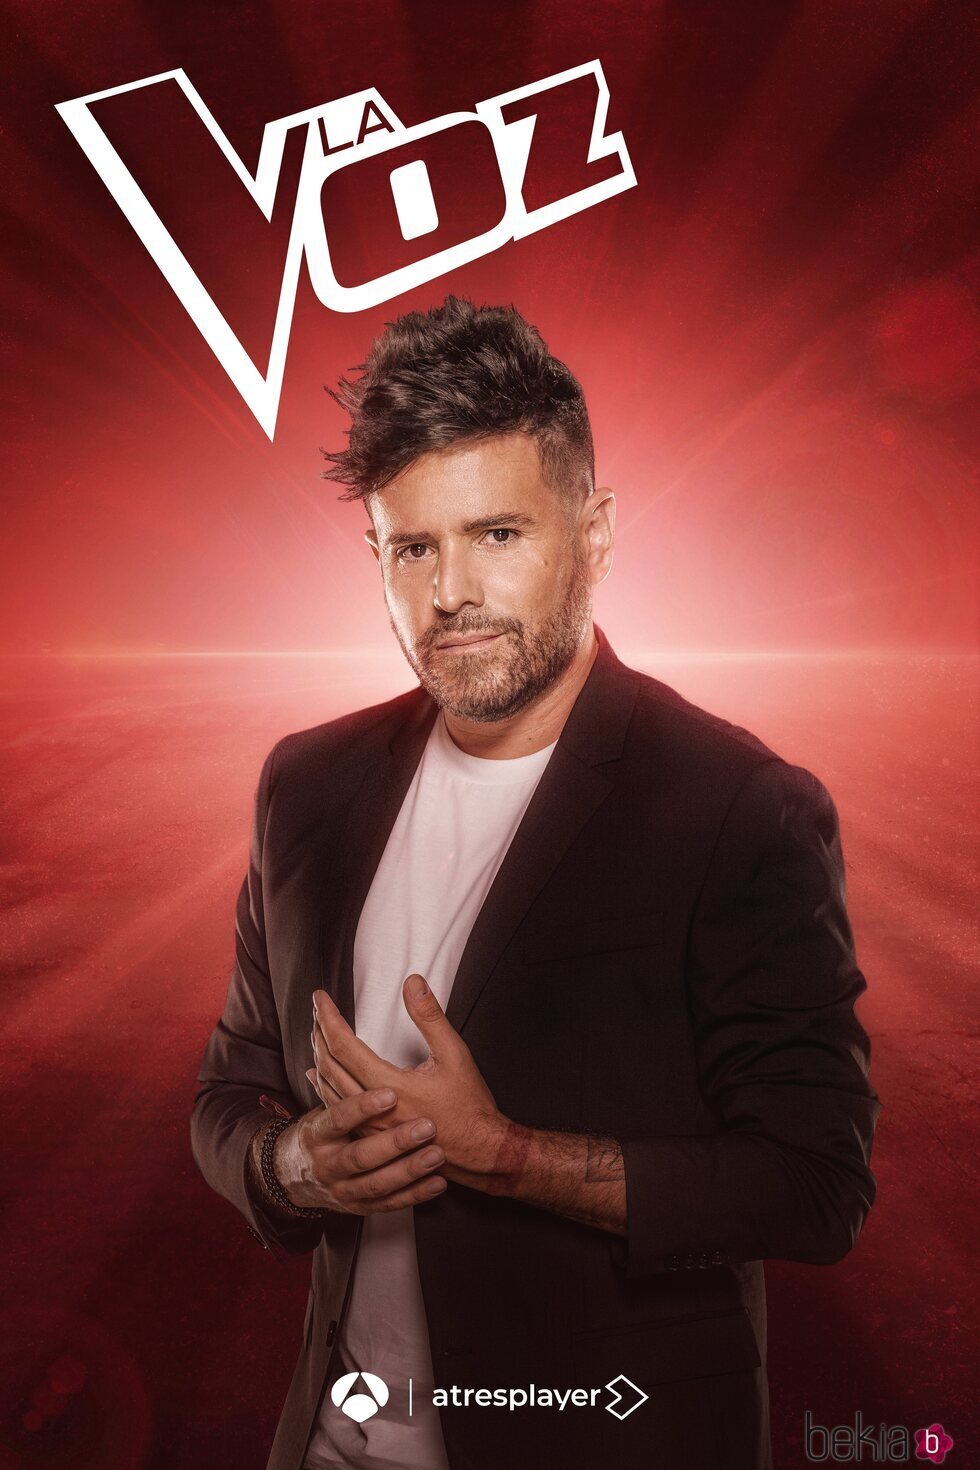 Póster promocional de Pablo López para la quinta edición de 'La Voz' en Antena 3